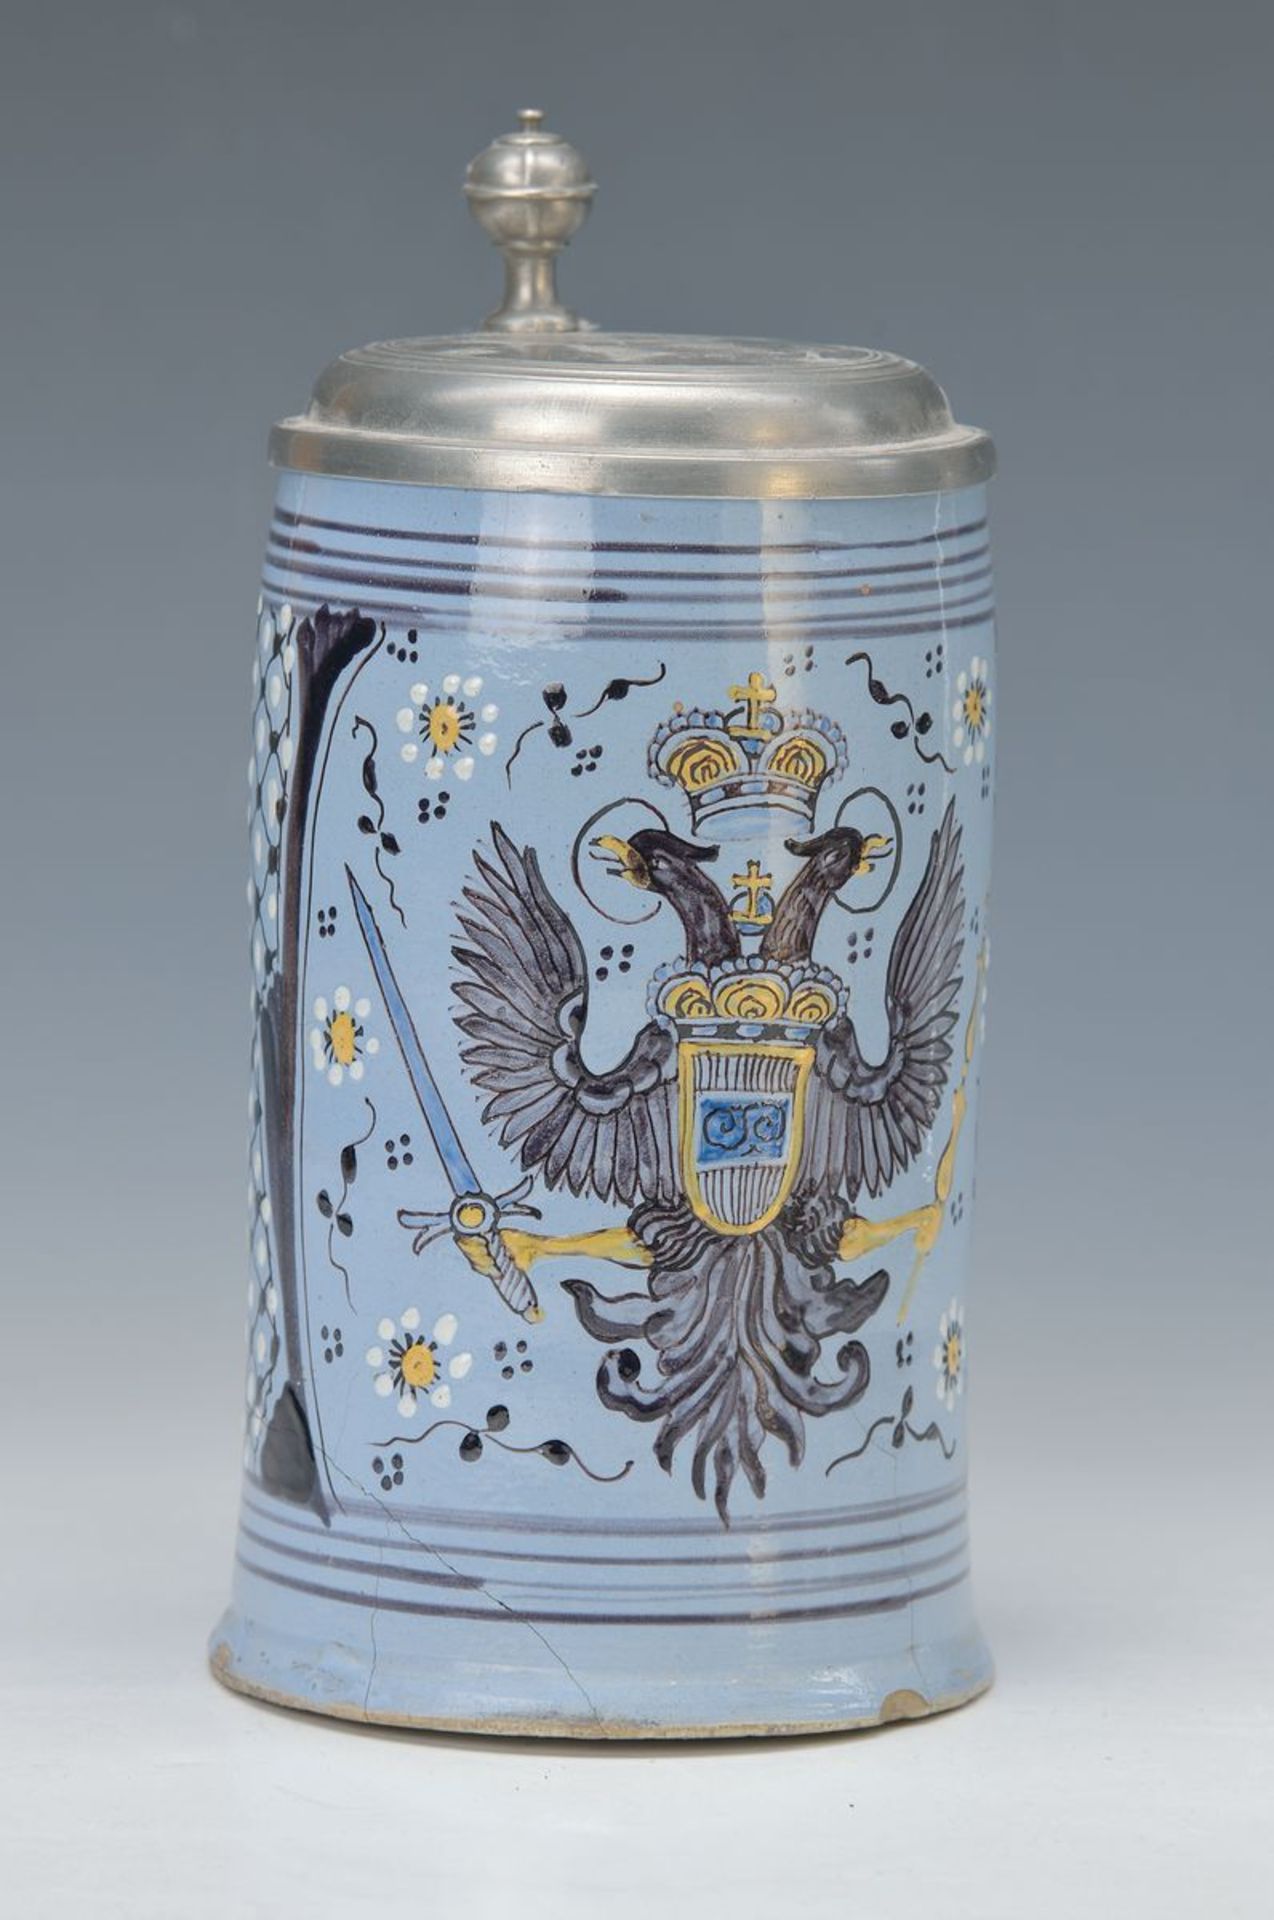 Walzenkrug mit großem Wappenemblem, Österreich, 18. Jh., gekrönter Doppeladler mit Schwert und